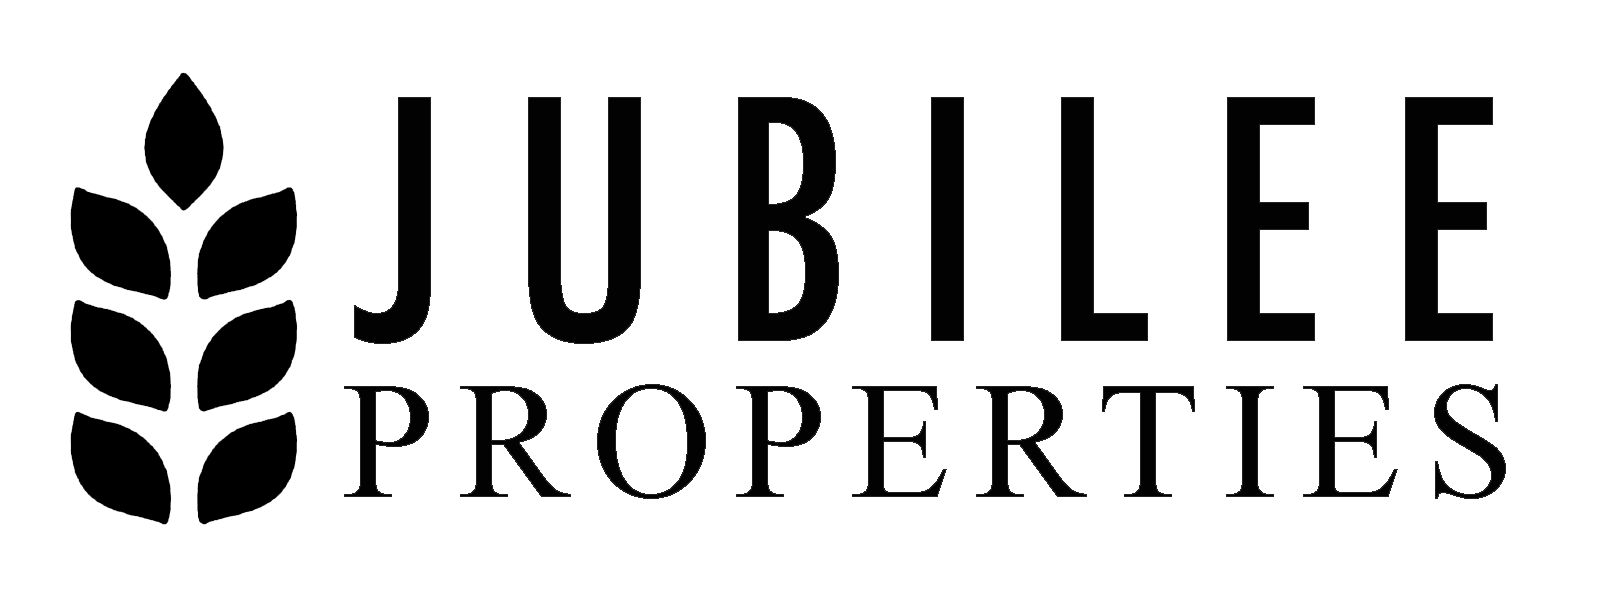 Jubilee Properties, LLC logo